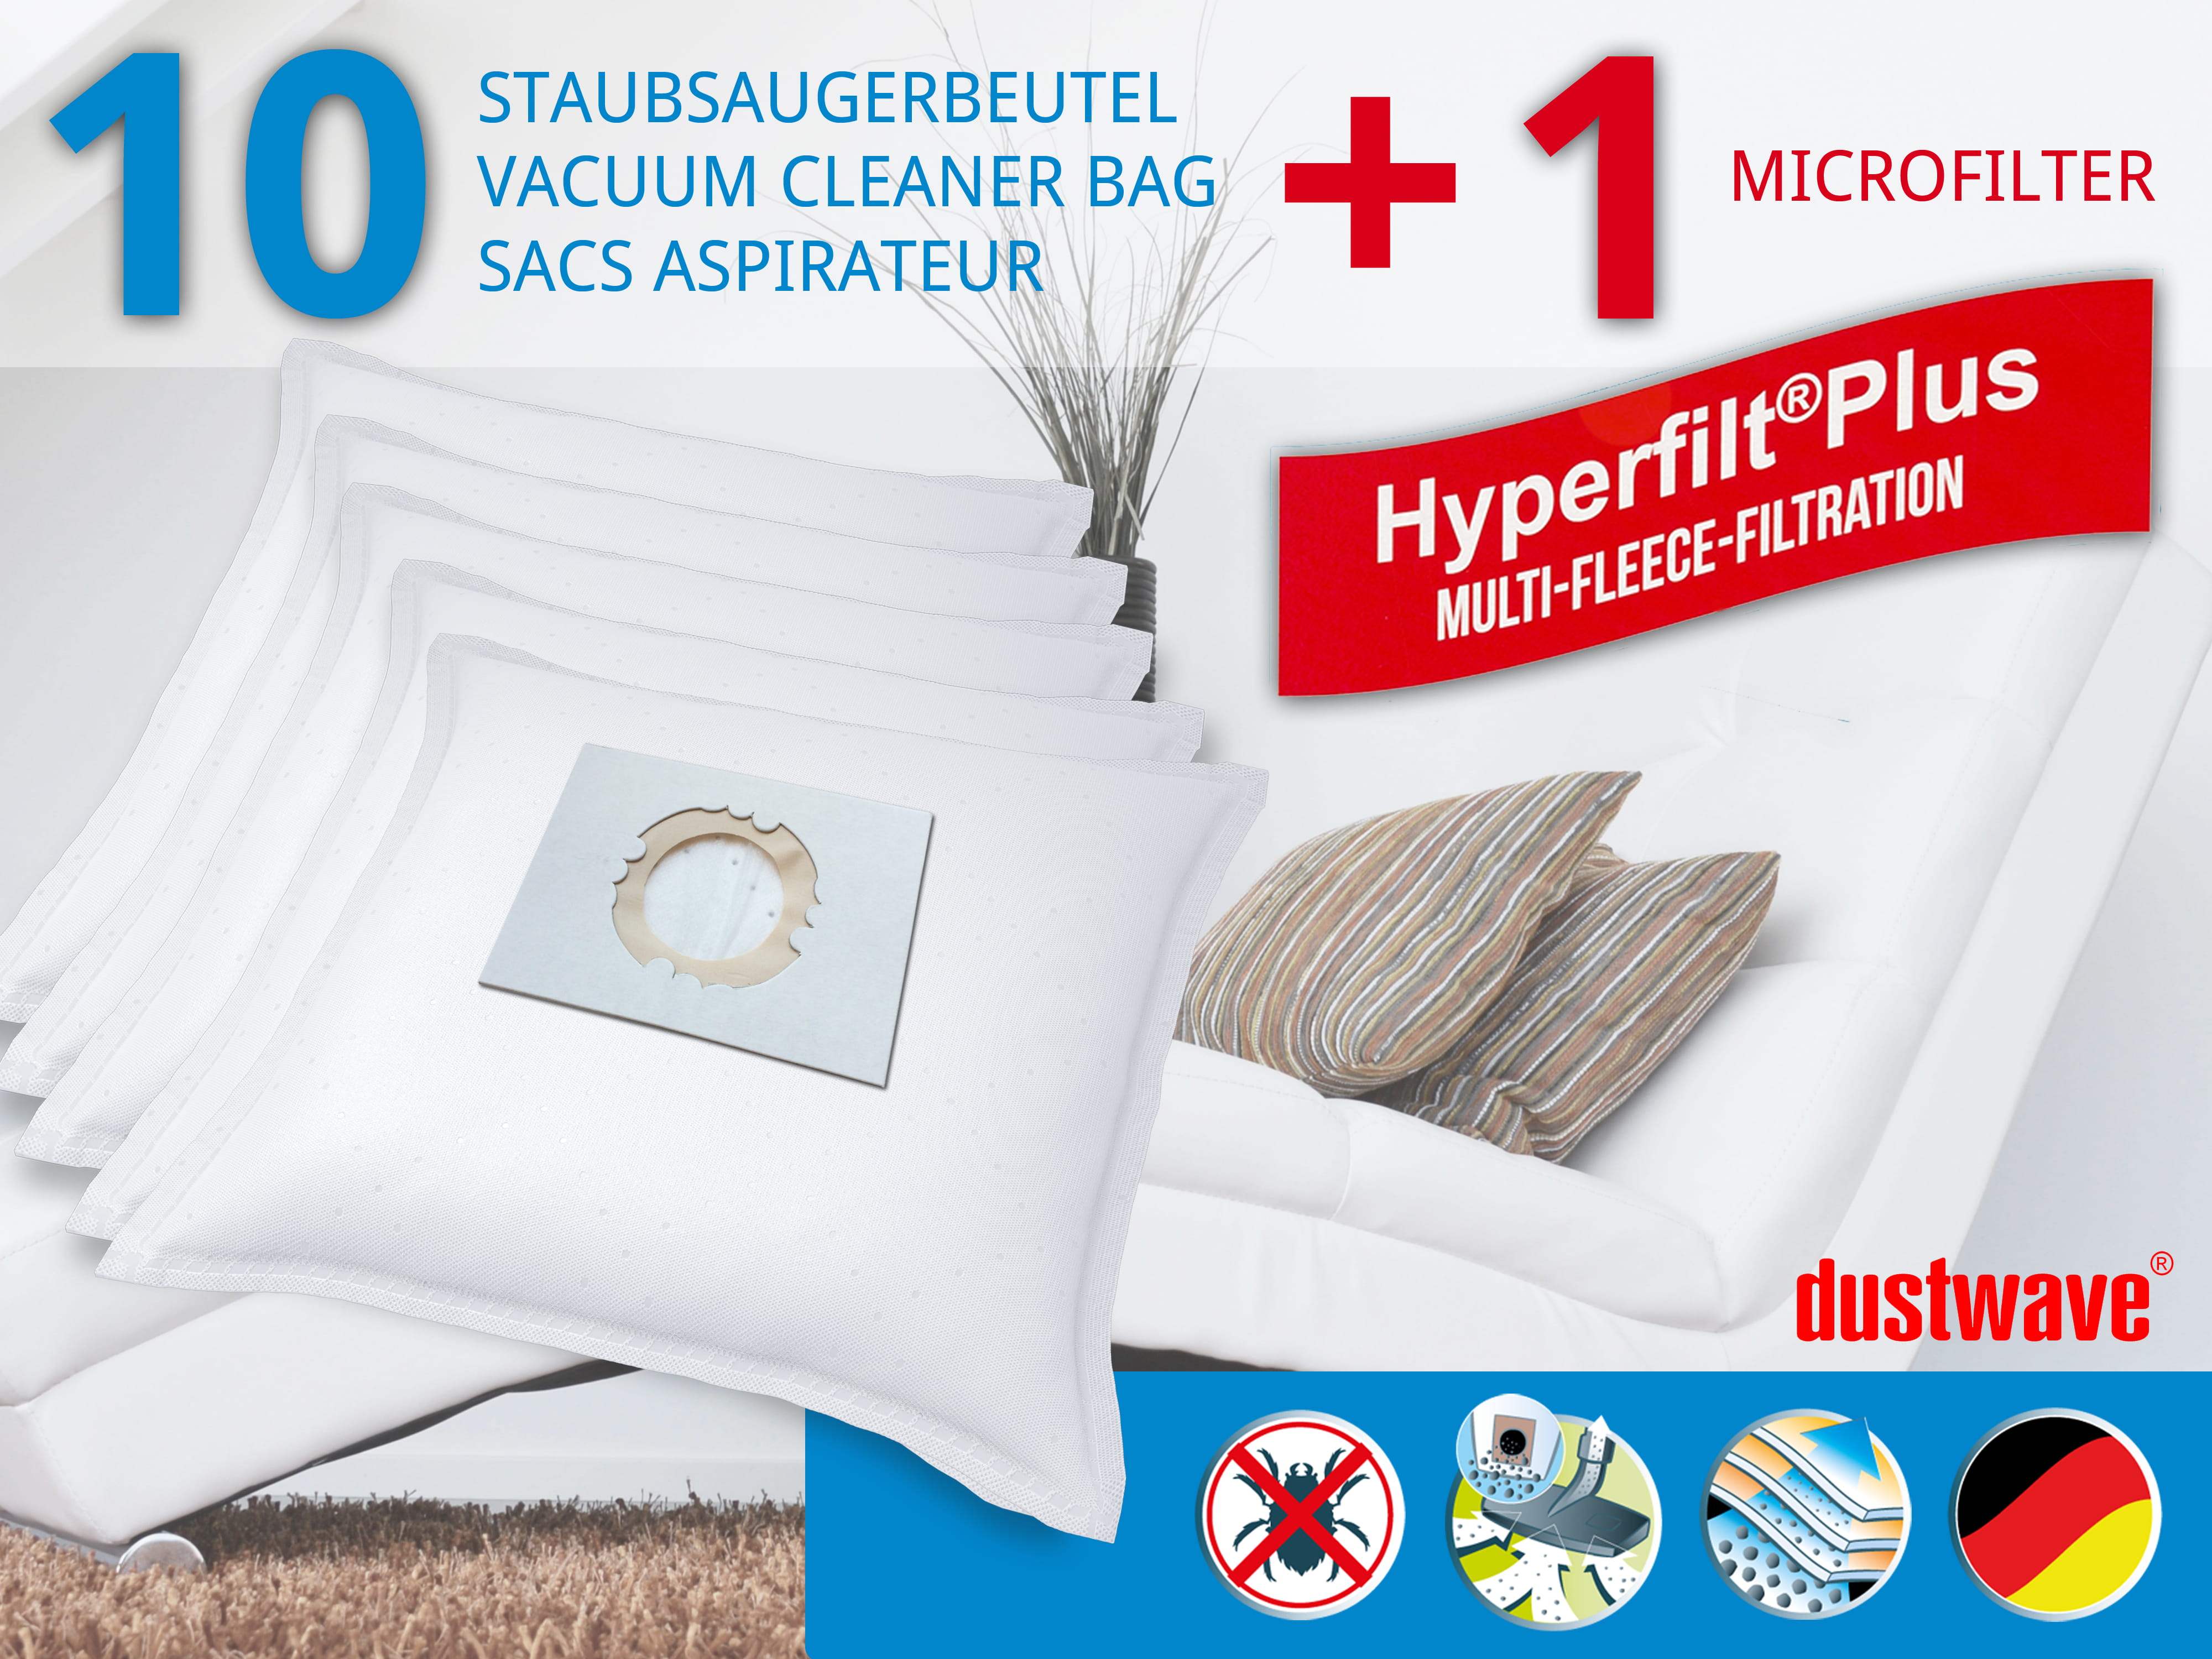 Dustwave® 10 Staubsaugerbeutel für Hoover BD S5135 011 - hocheffizient, mehrlagiges Mikrovlies mit Hygieneverschluss - Made in Germany